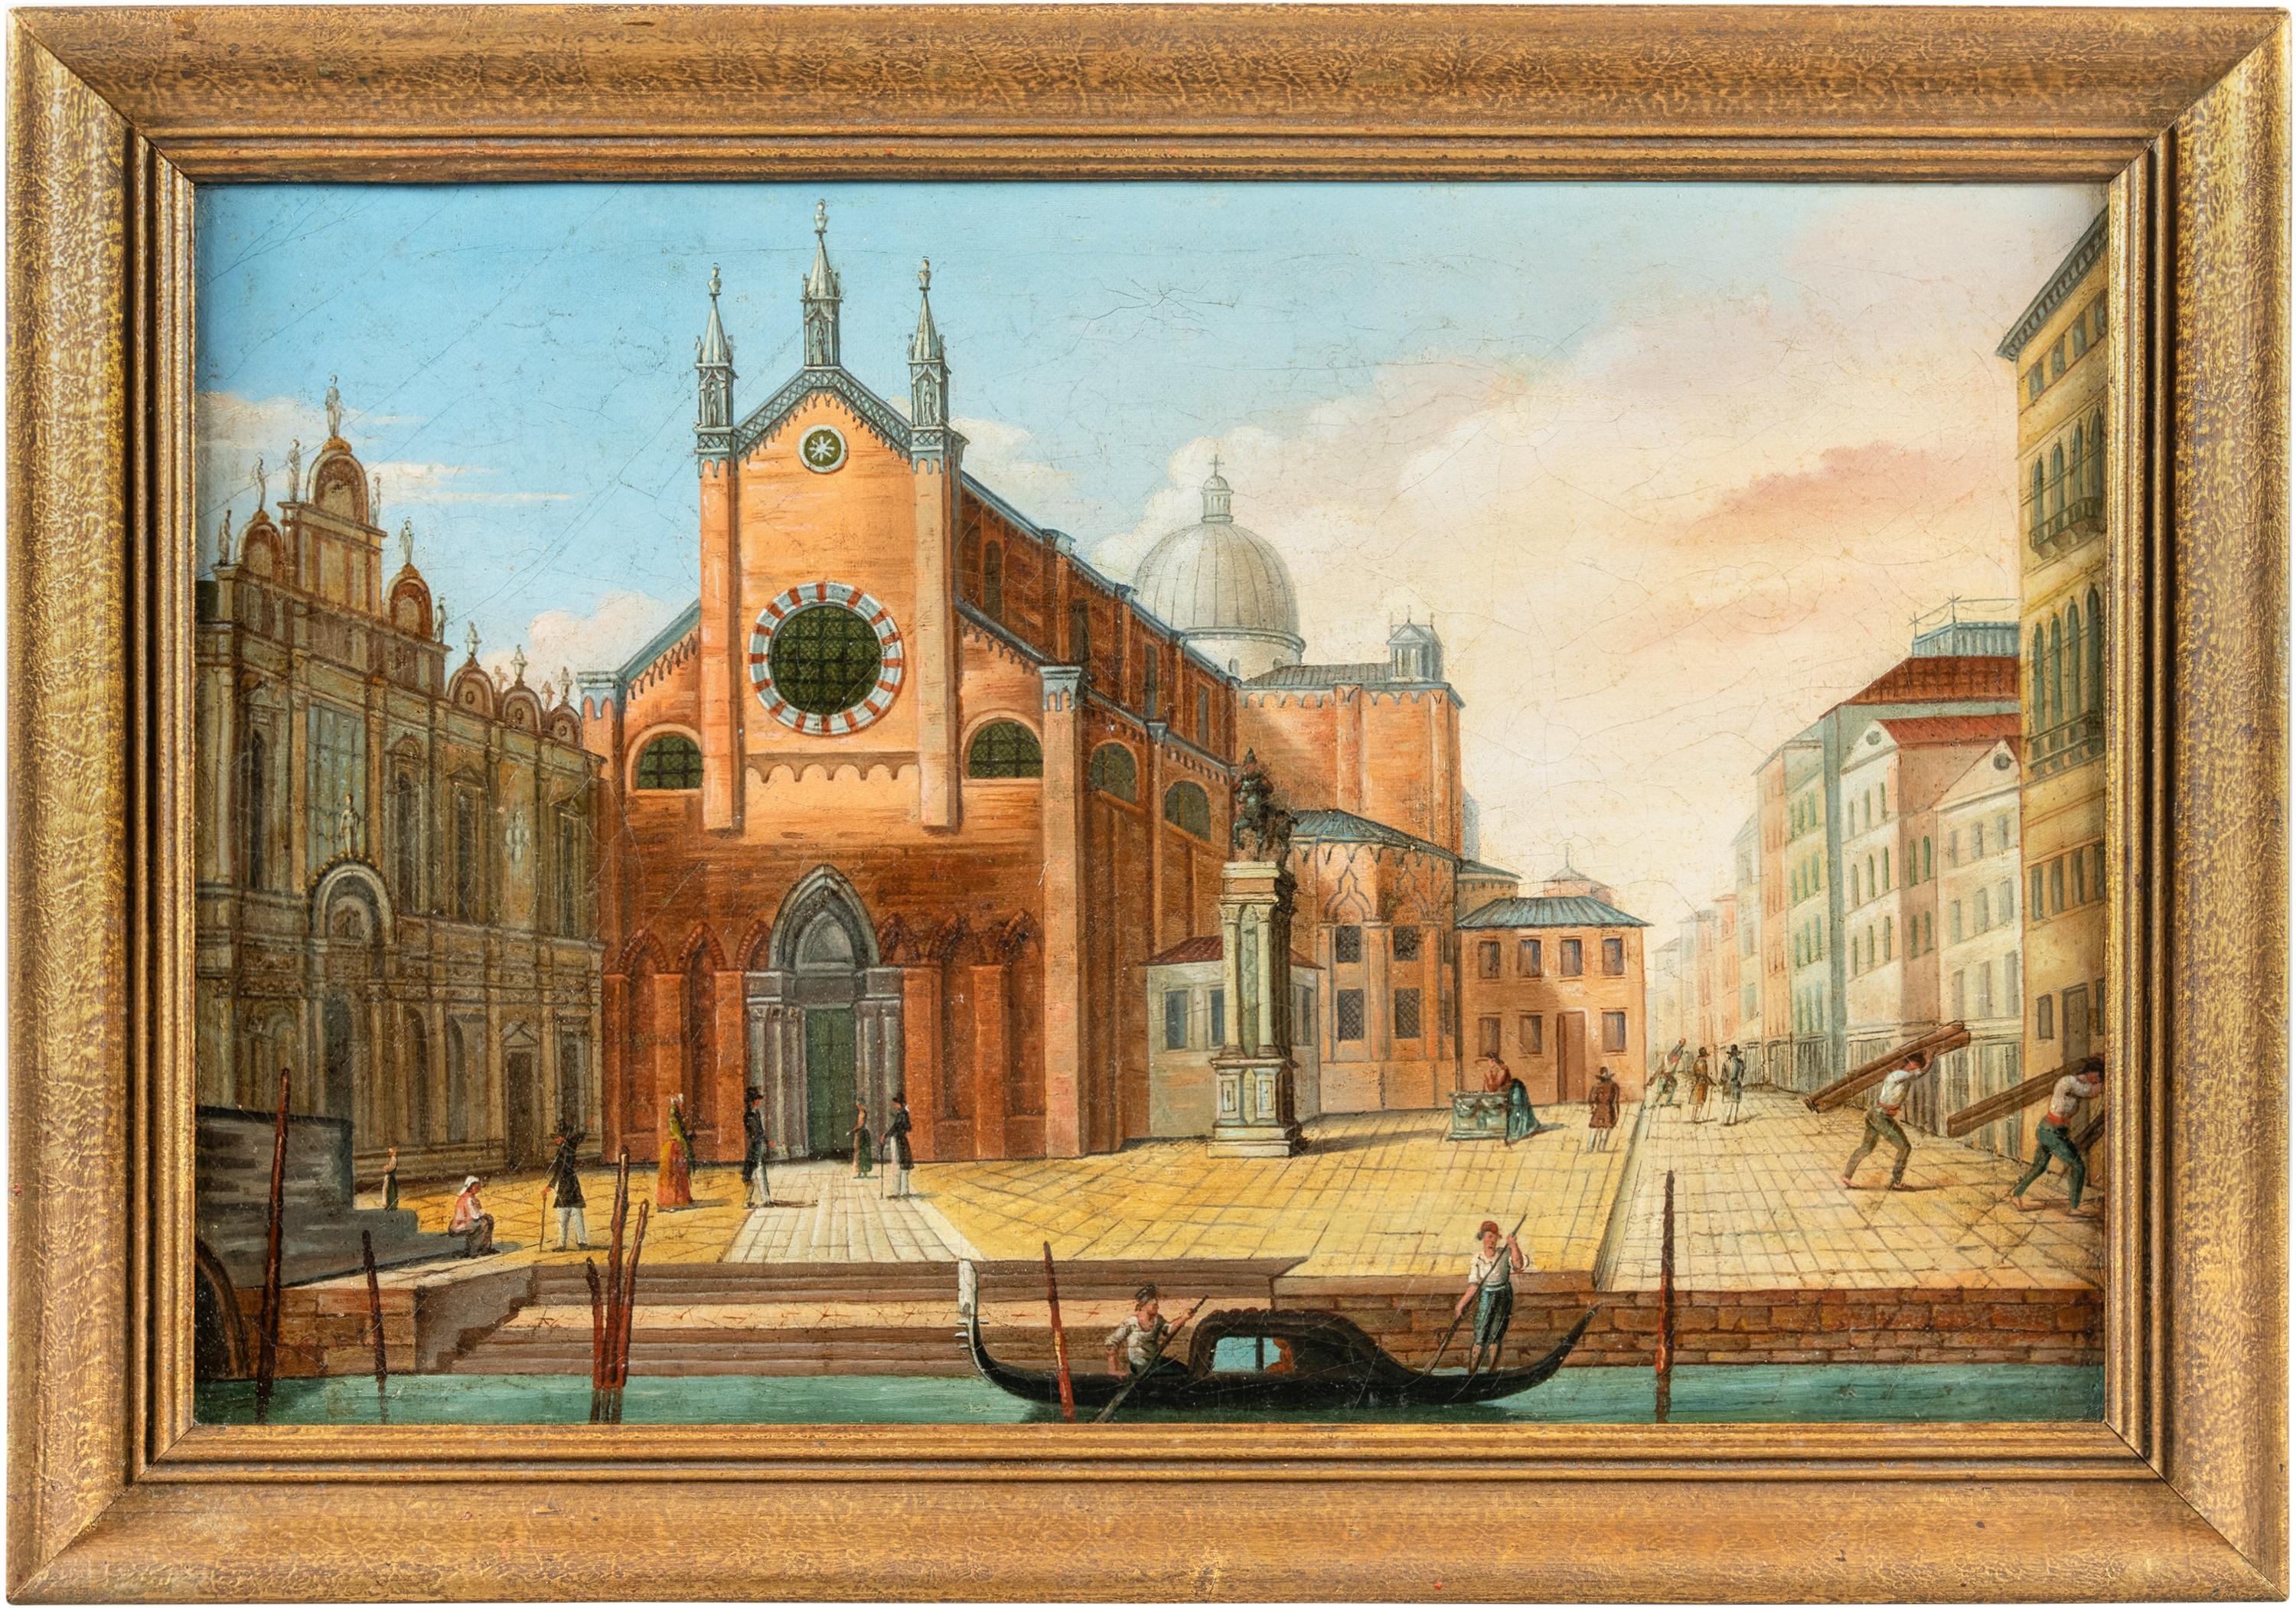 Vedutist Venetian painter - 19th century landscape painting - Venice view 